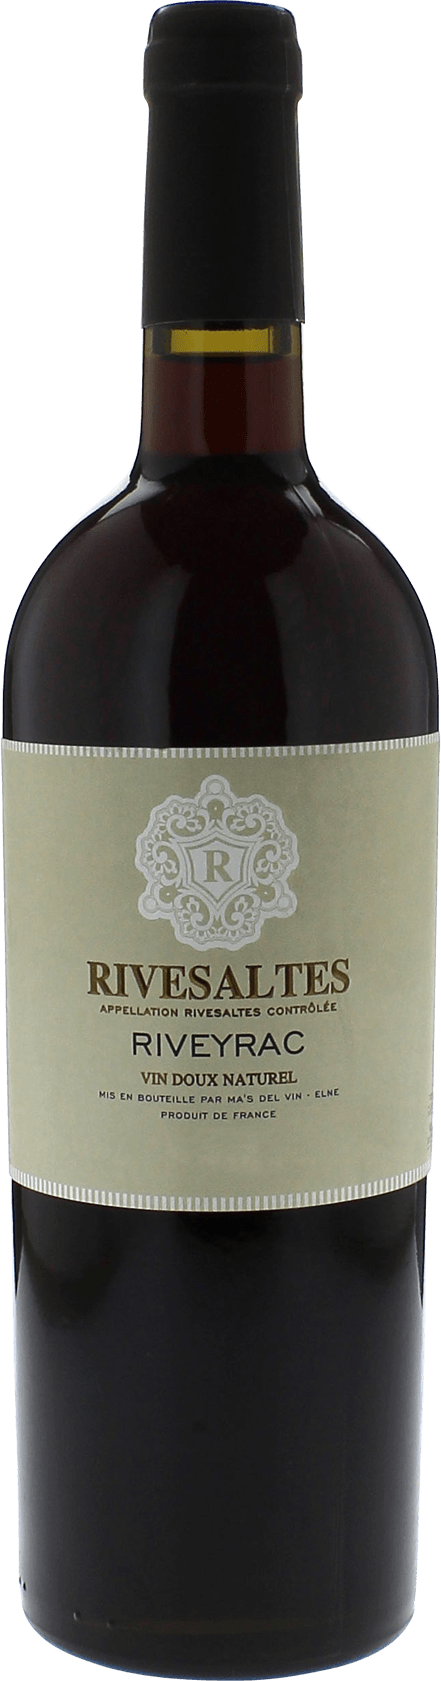 Rivesaltes riveyrac 1970 Vin doux naturel Rivesaltes, Vin doux naturel